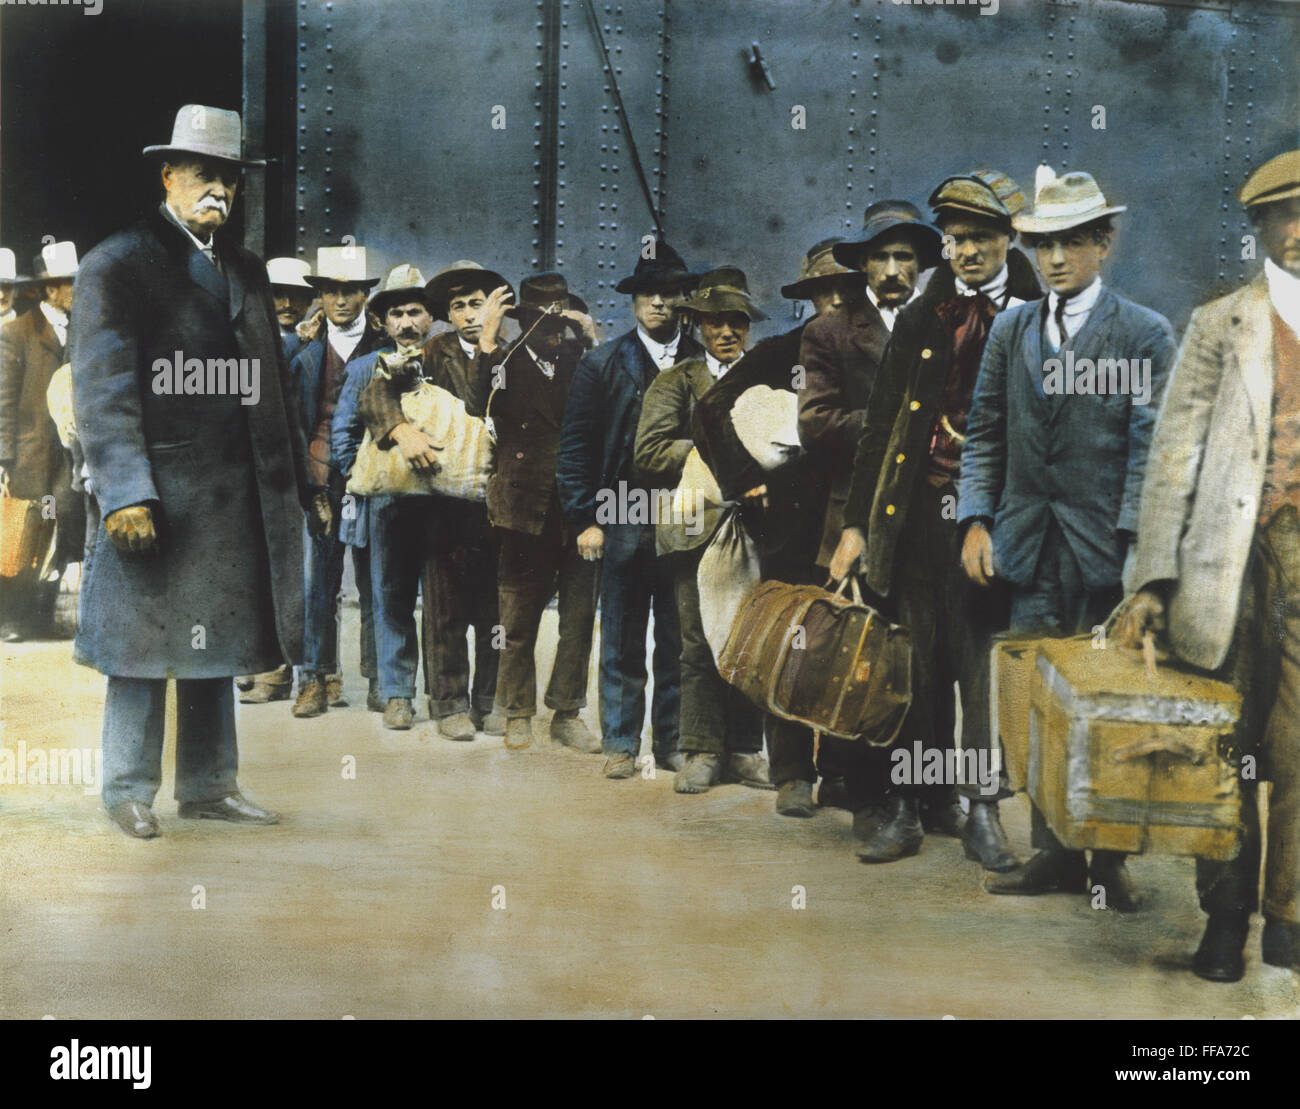 L'ITALIEN chez les hommes immigrants. /NNewly les immigrants reçus de l''S.S./nPrincess Irene' sur leur façon d'Ellis Island. Huile à une photographie, c1900. Banque D'Images